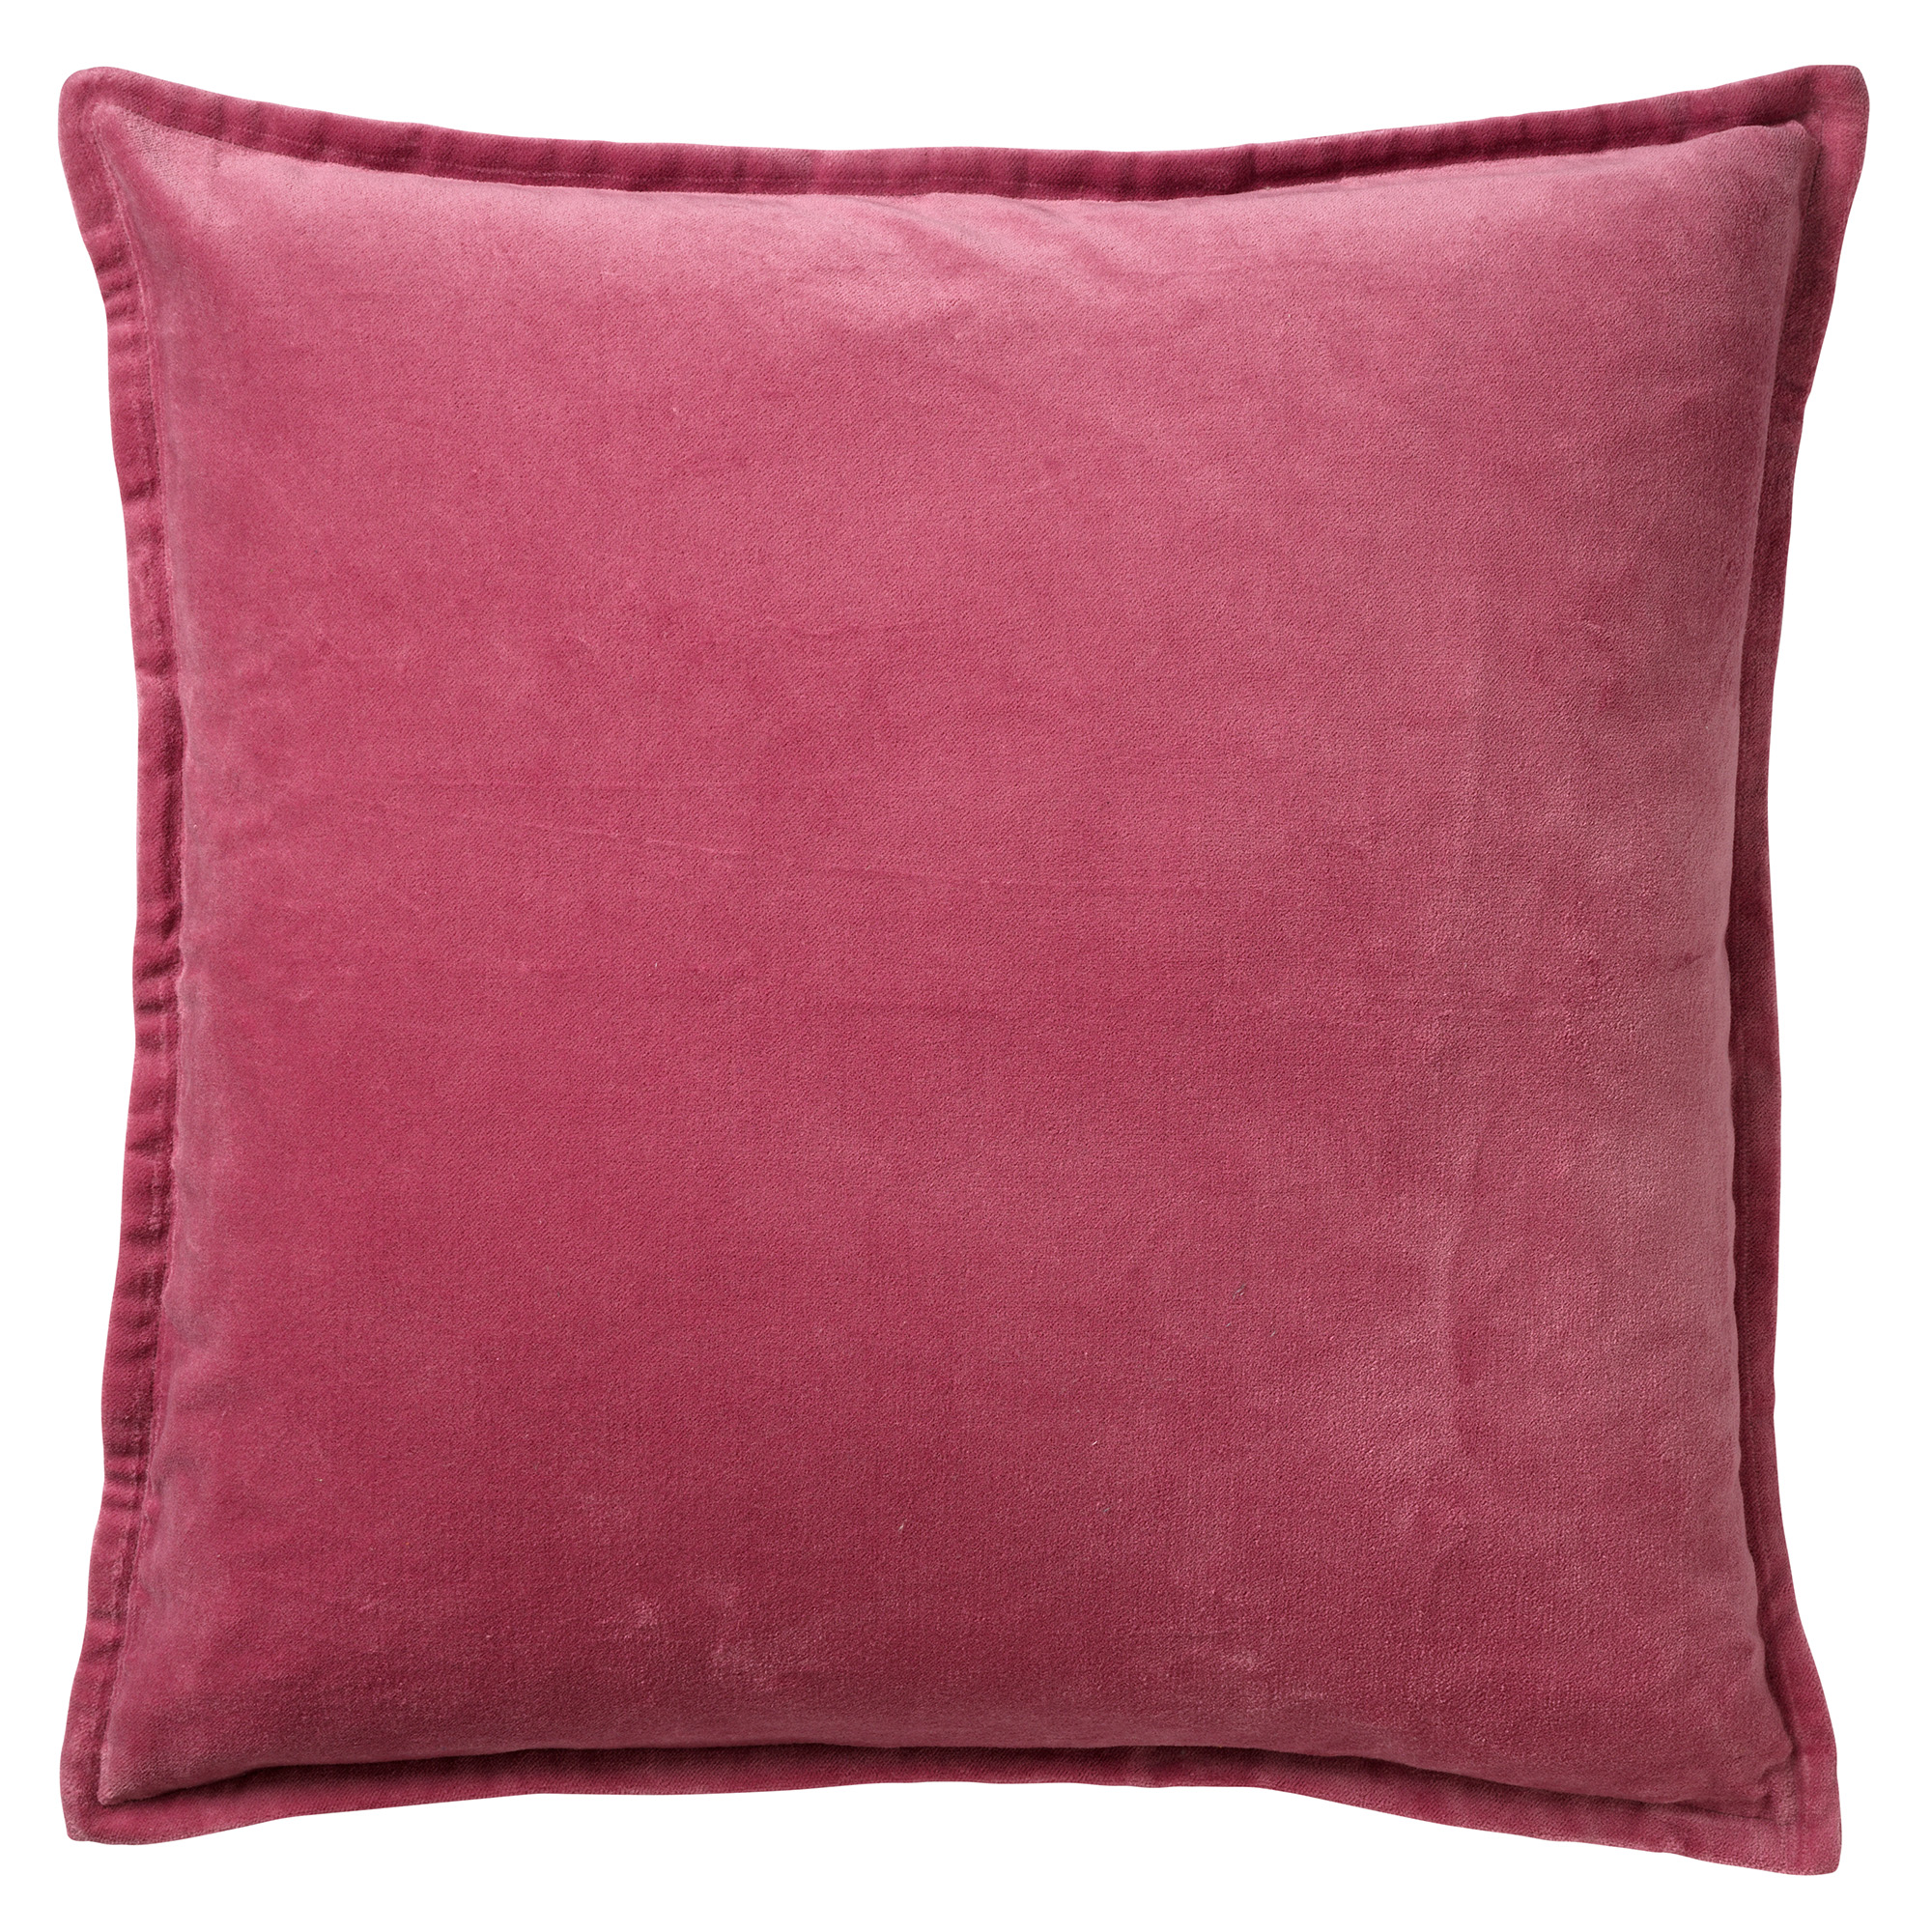 CAITH - Kussenhoes 100% katoen velvet 50x50 cm - Heather Rose - roze